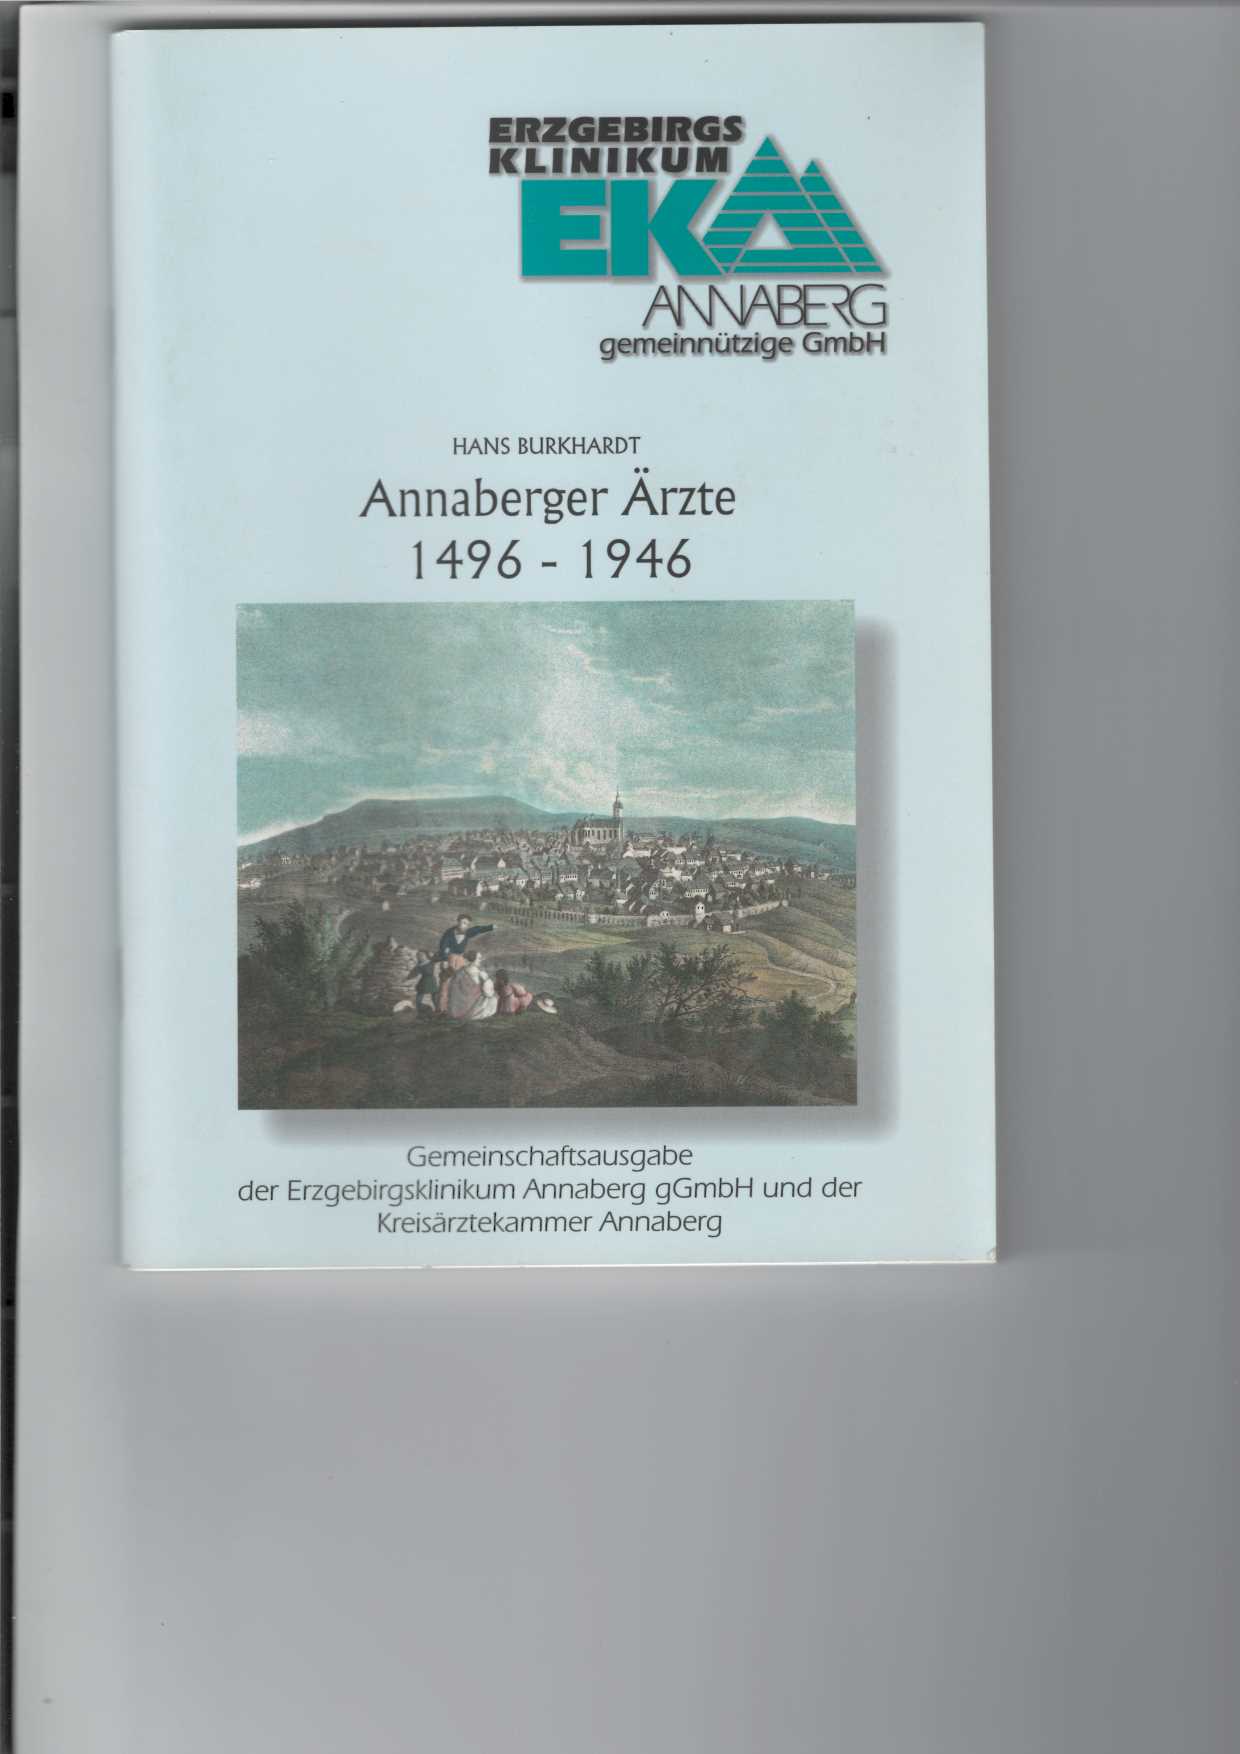 Annaberger Ärzte 1496 - 1946.